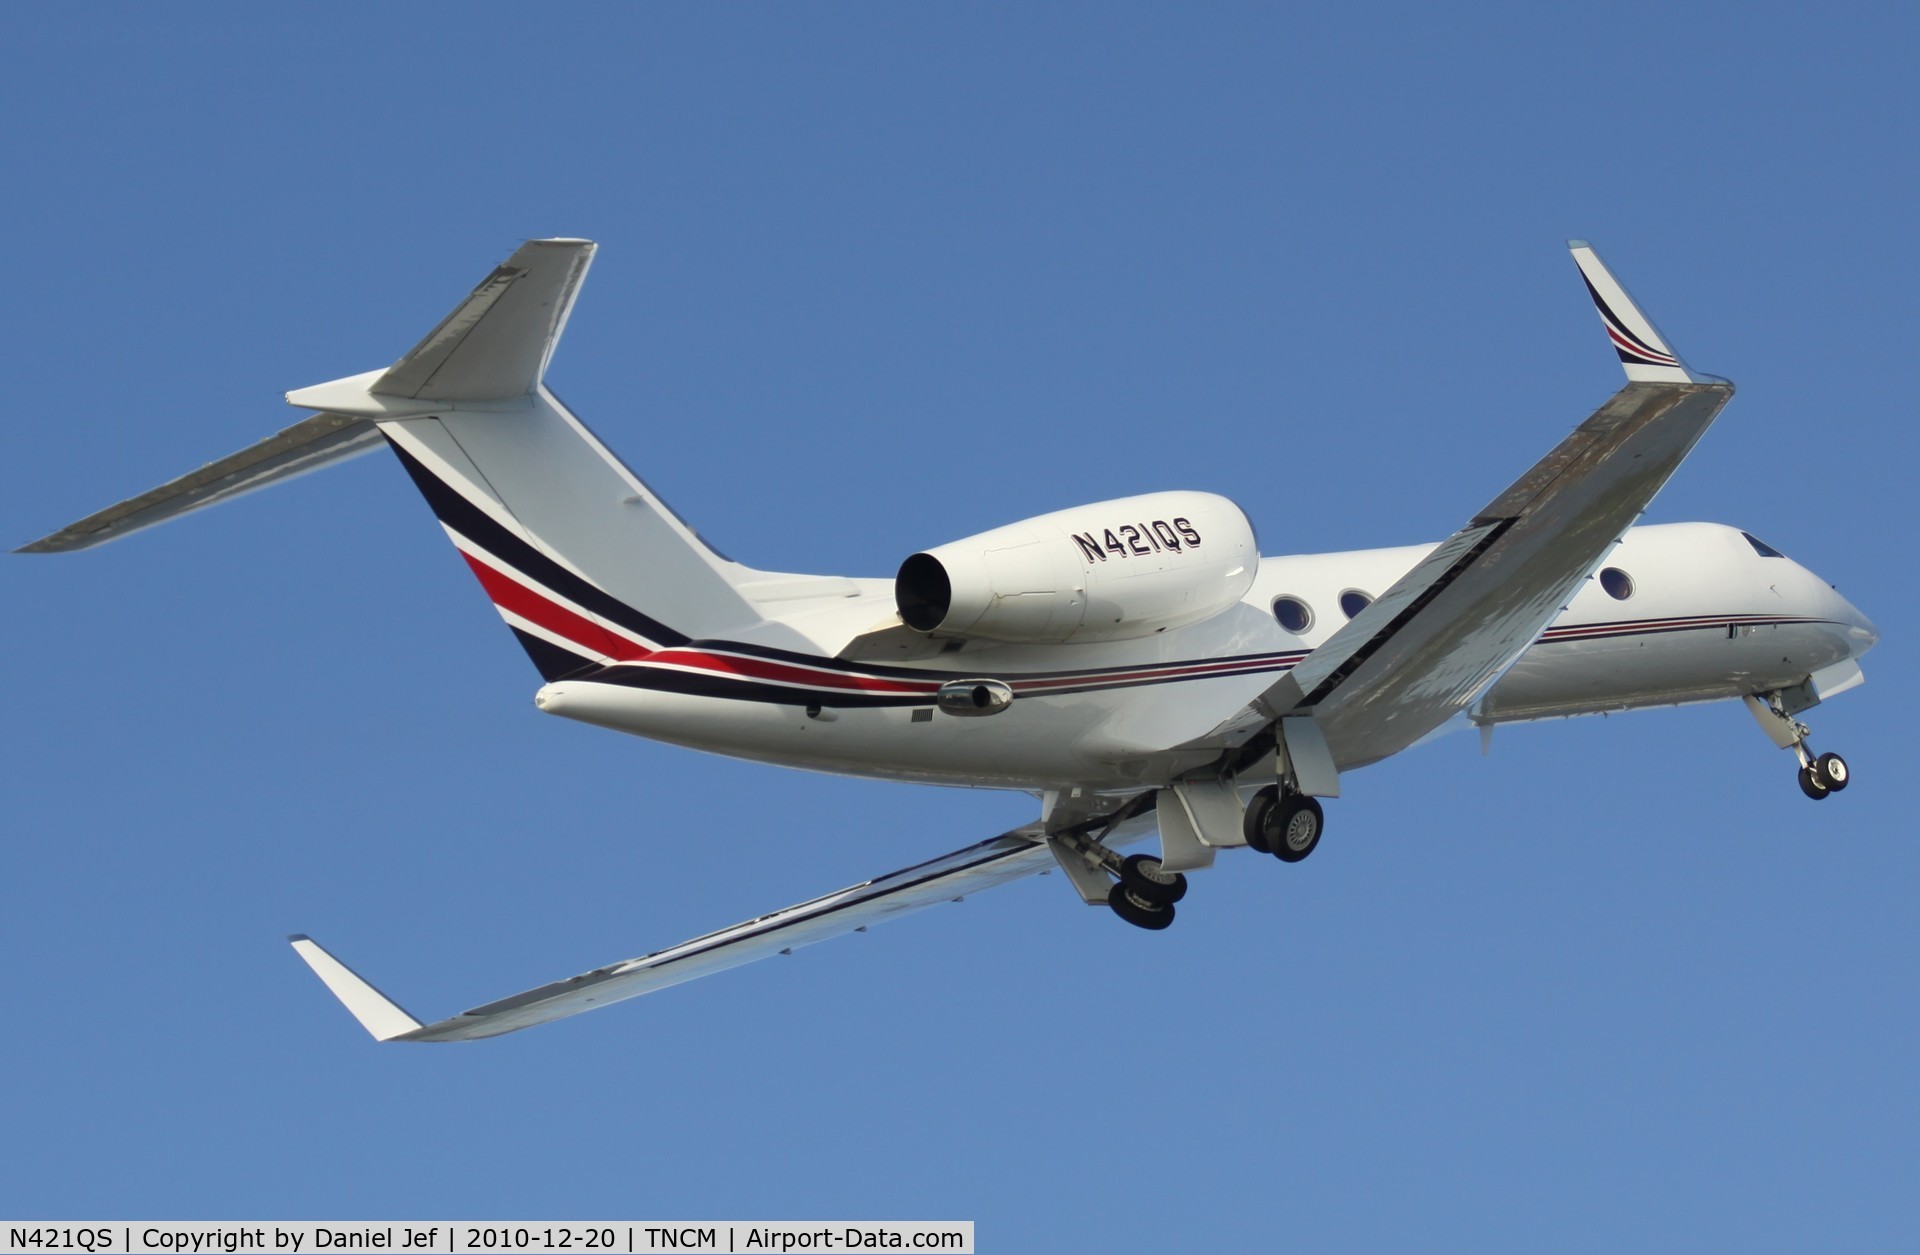 N421QS, 2008 Gulfstream Aerospace GIV-X (G450) C/N 4114, N421QS departing TNCM runway 10